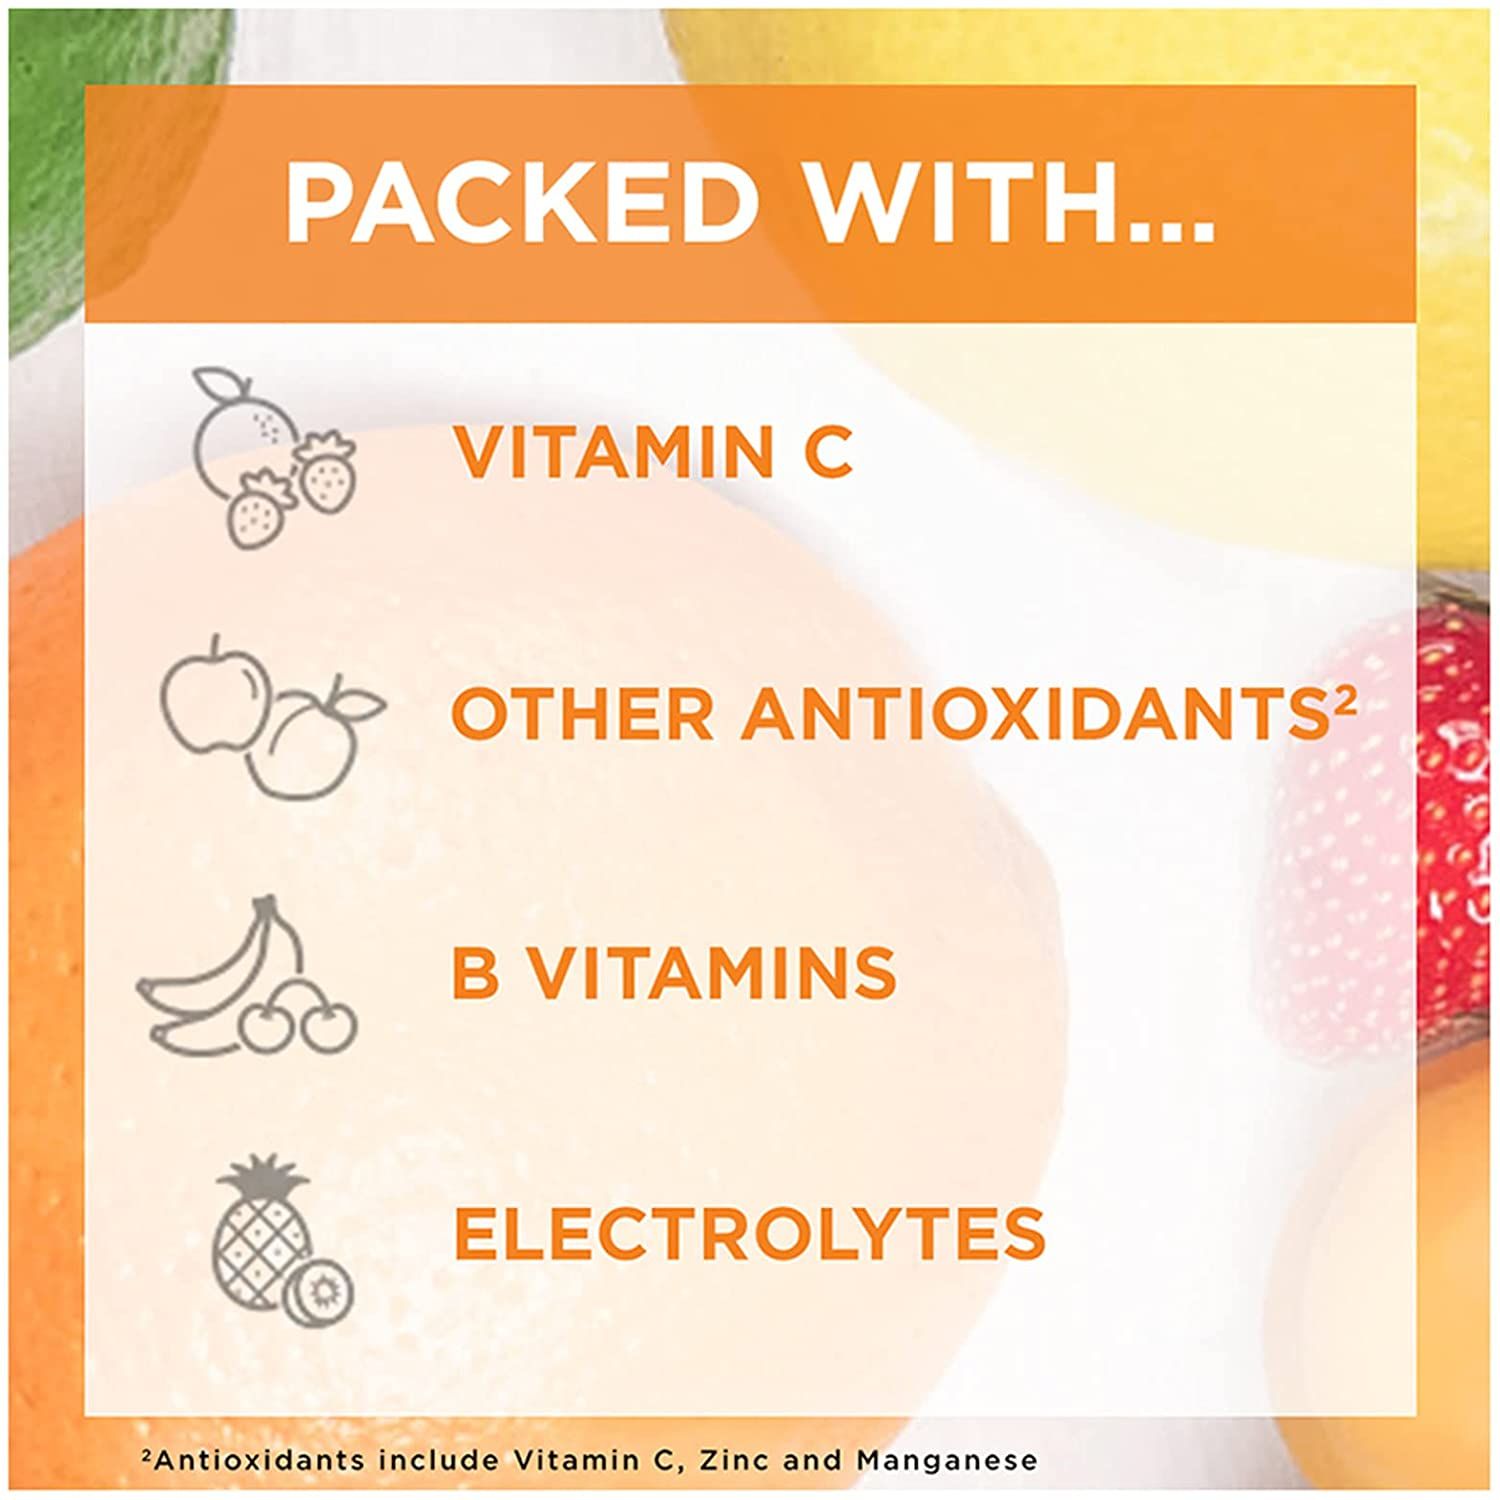 Emergen-C  Vitamin C Immune Support Drink Mix, 1000 mg, Super Orange - 30 ct